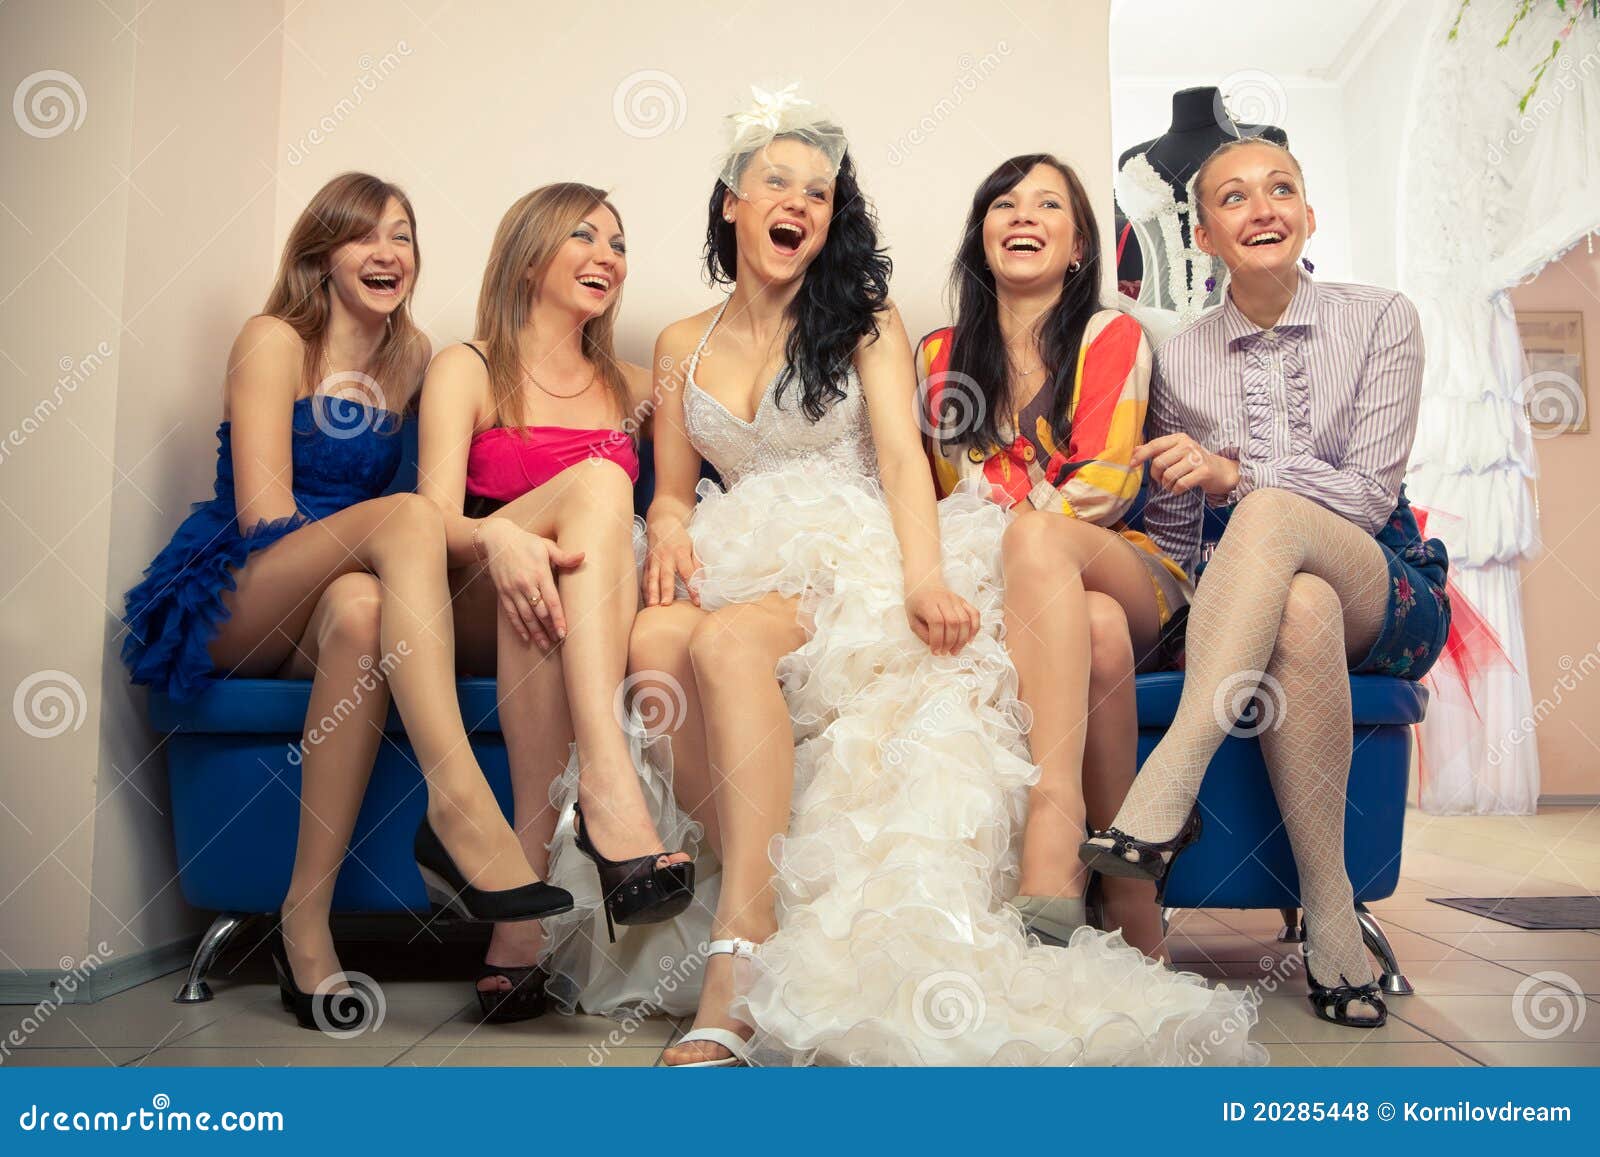 wife pussy girlfriends bride